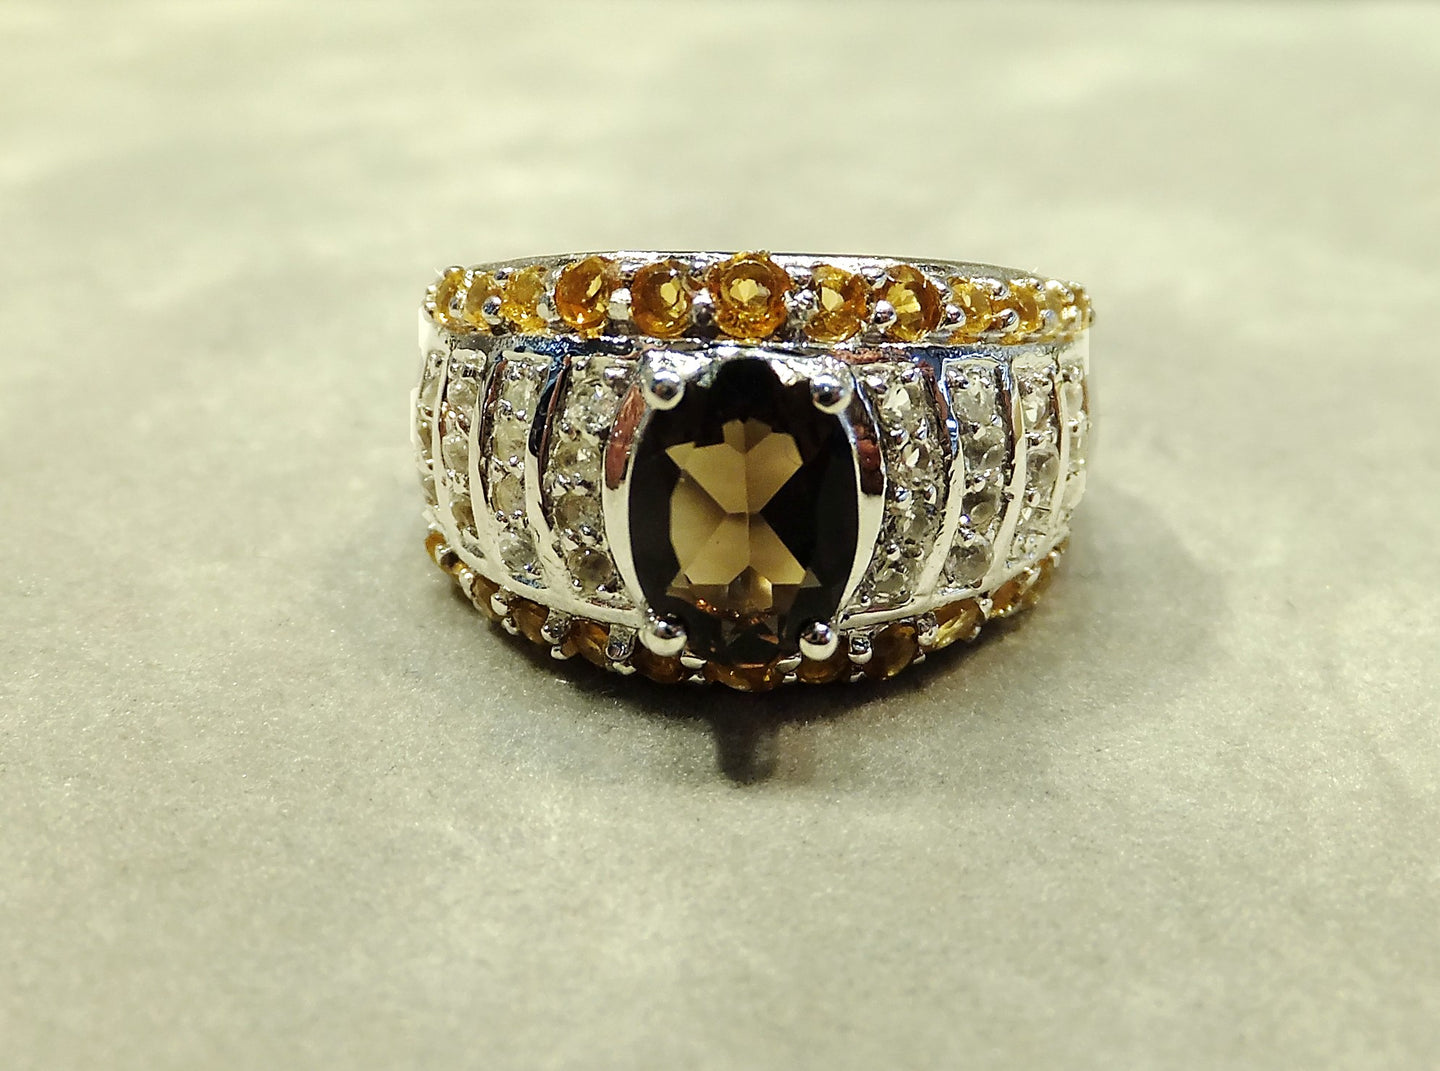 Smokey Quartz gemstone ring